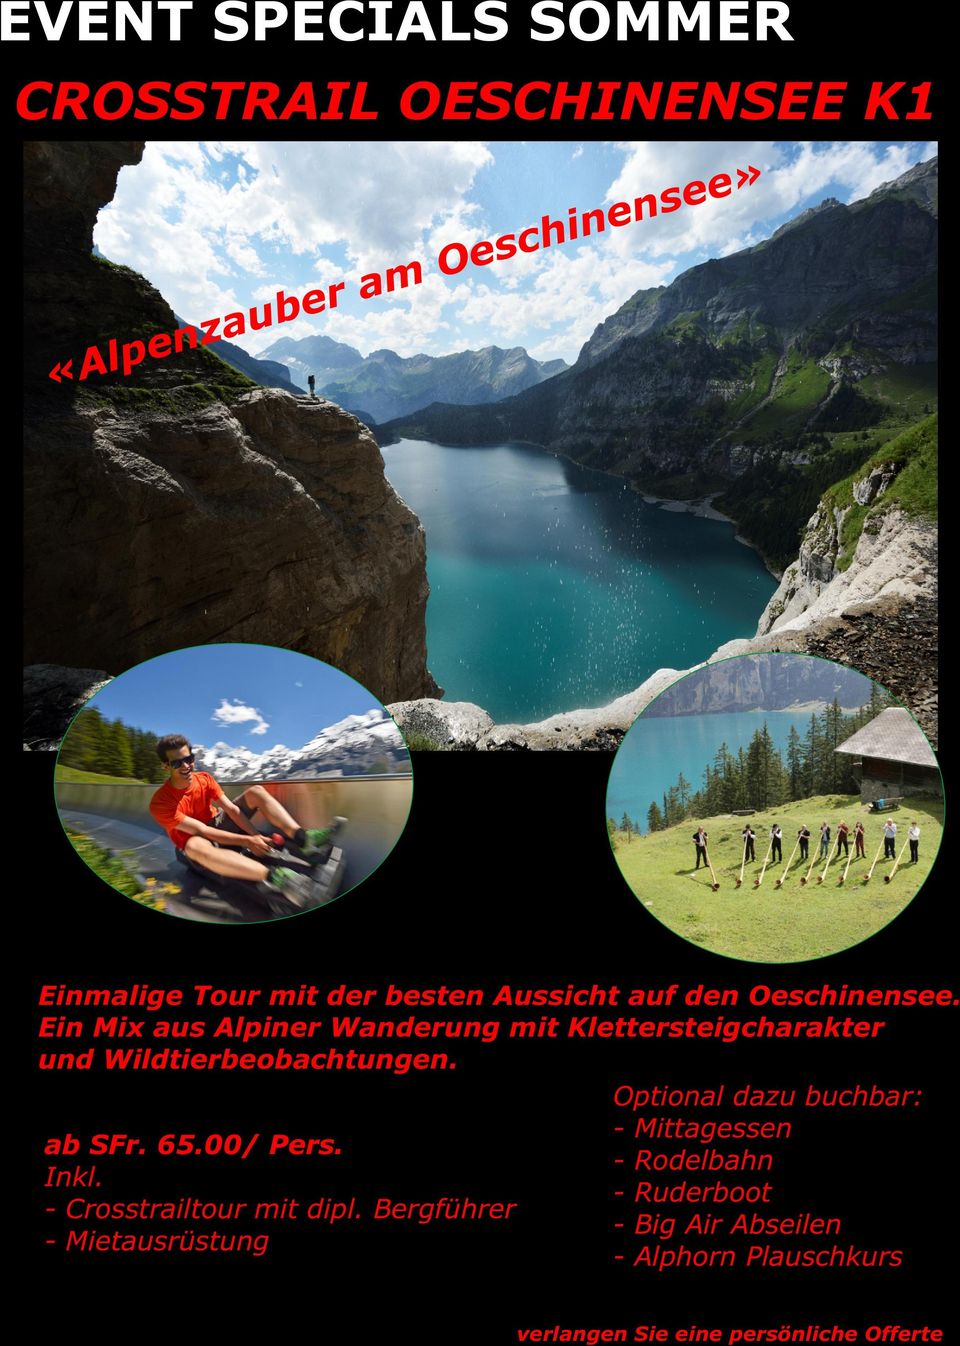 Ein Mix aus Alpiner Wanderung mit Klettersteigcharakter und Wildtierbeobachtungen.